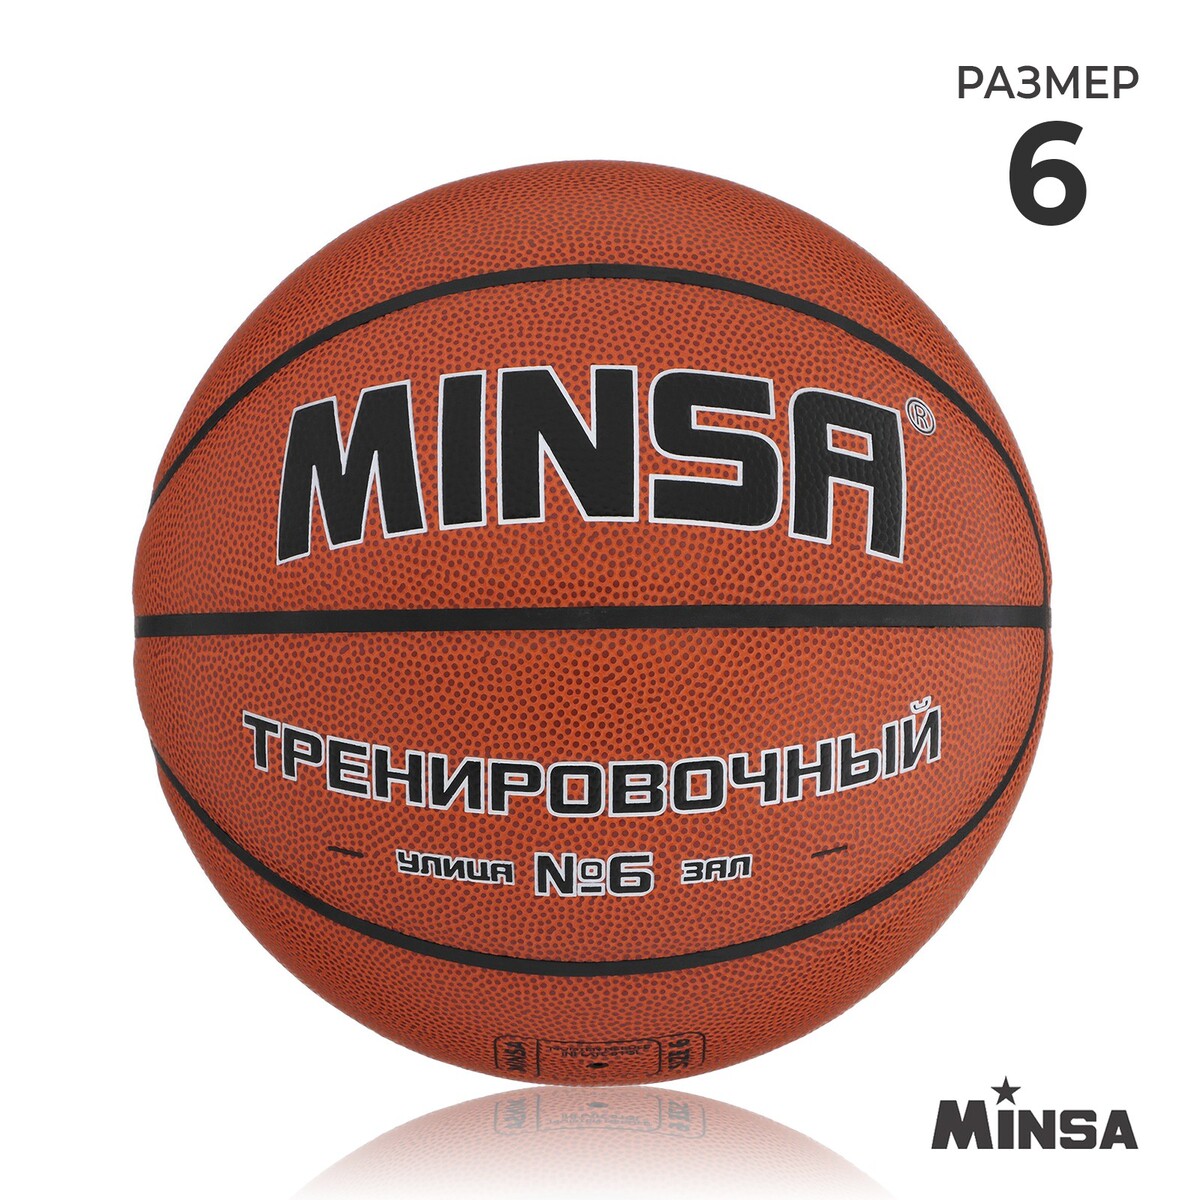 Баскетбольный мяч minsa, тренировочный, pu, клееный, 8 панелей, р. 6 мяч баскетбольный minsa air power пвх клееный 8 панелей р 7